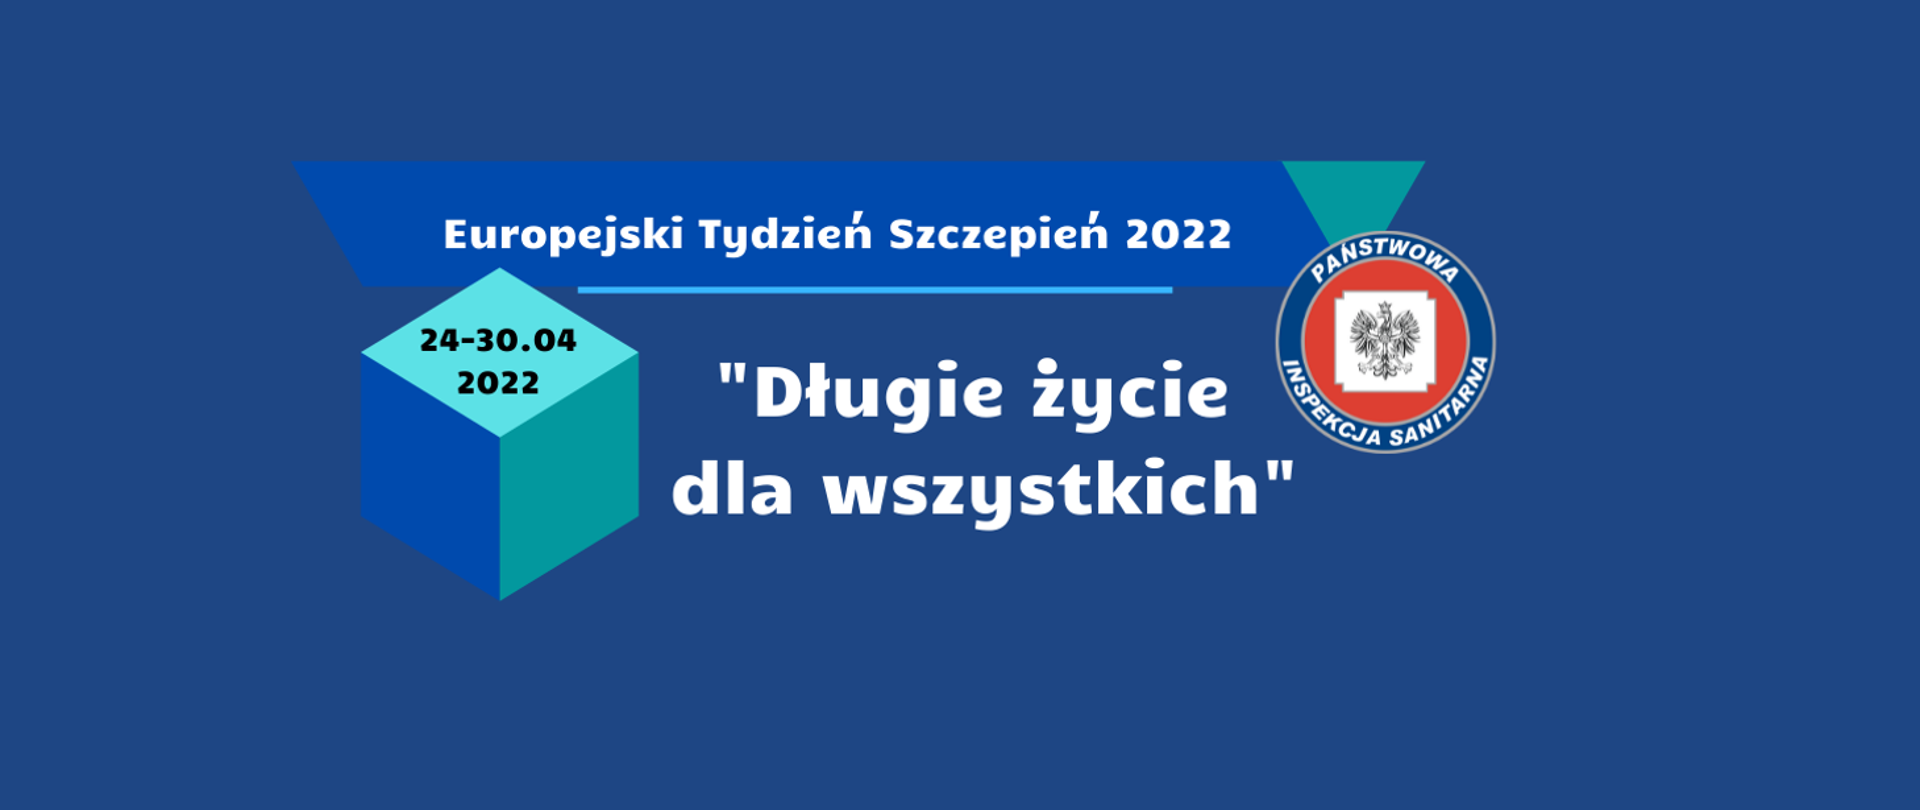 Europejski_tydzień_szczepień_2022